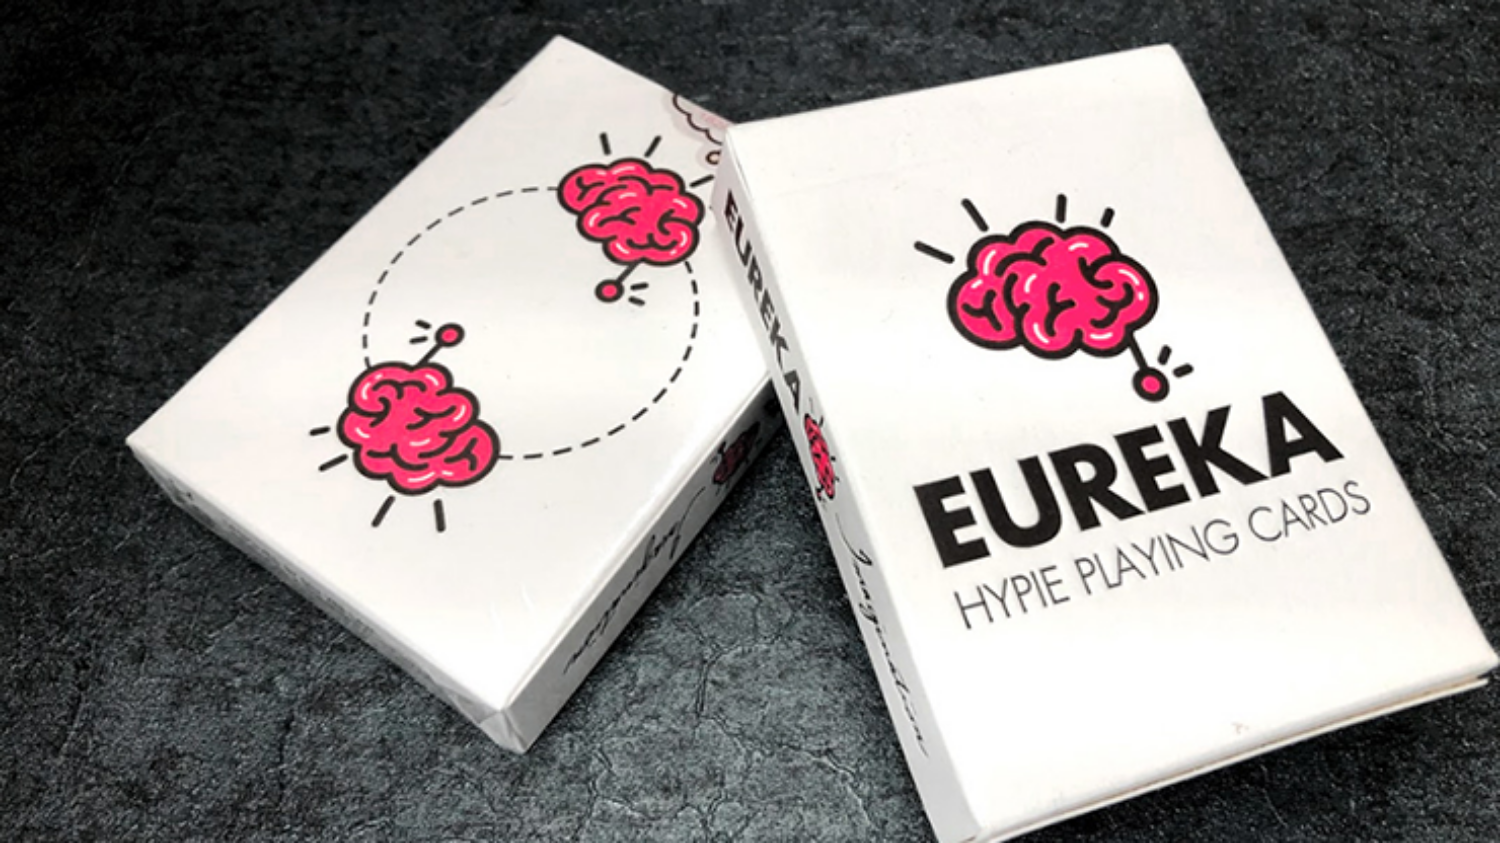 [히피유레카 이미지네이션] Hypie Eureka Playing Cards: Imagination Playing Cards